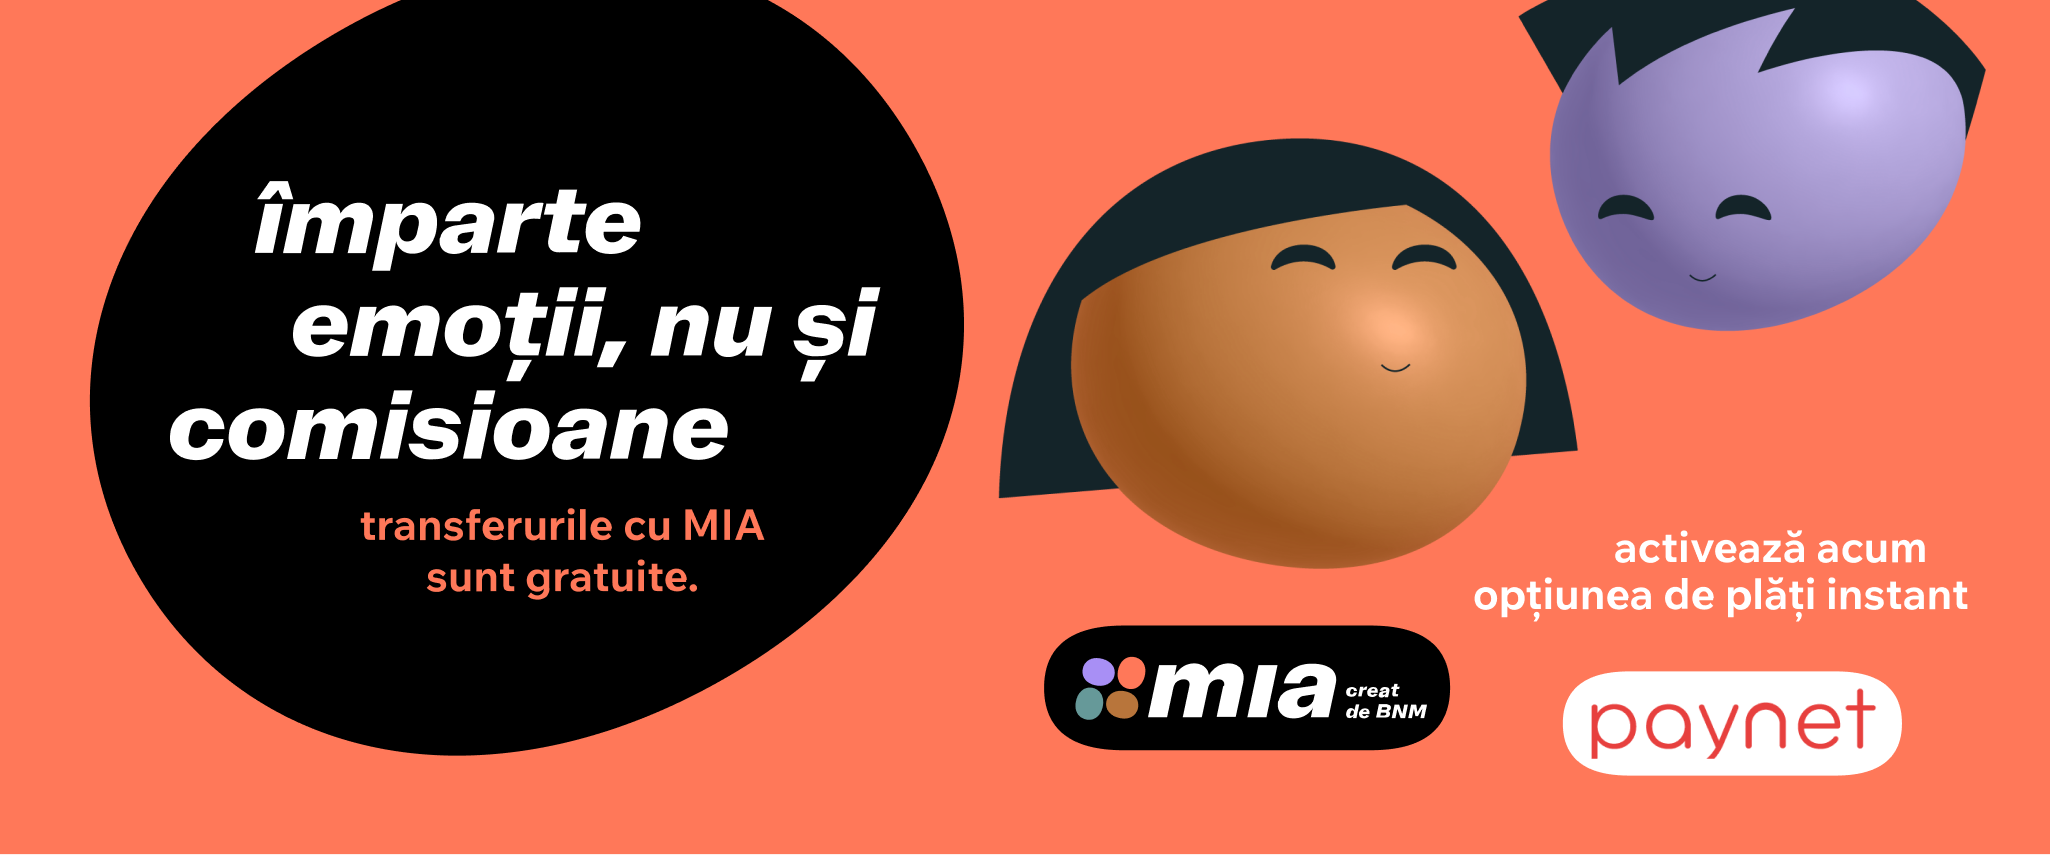 Сервис MIA Мгновенные Платежи обеспечивает быстрый и безопасный перевод денег между всеми финансовыми счетами в Республике Молдова без комиссий, используя только номер телефона получателя.

